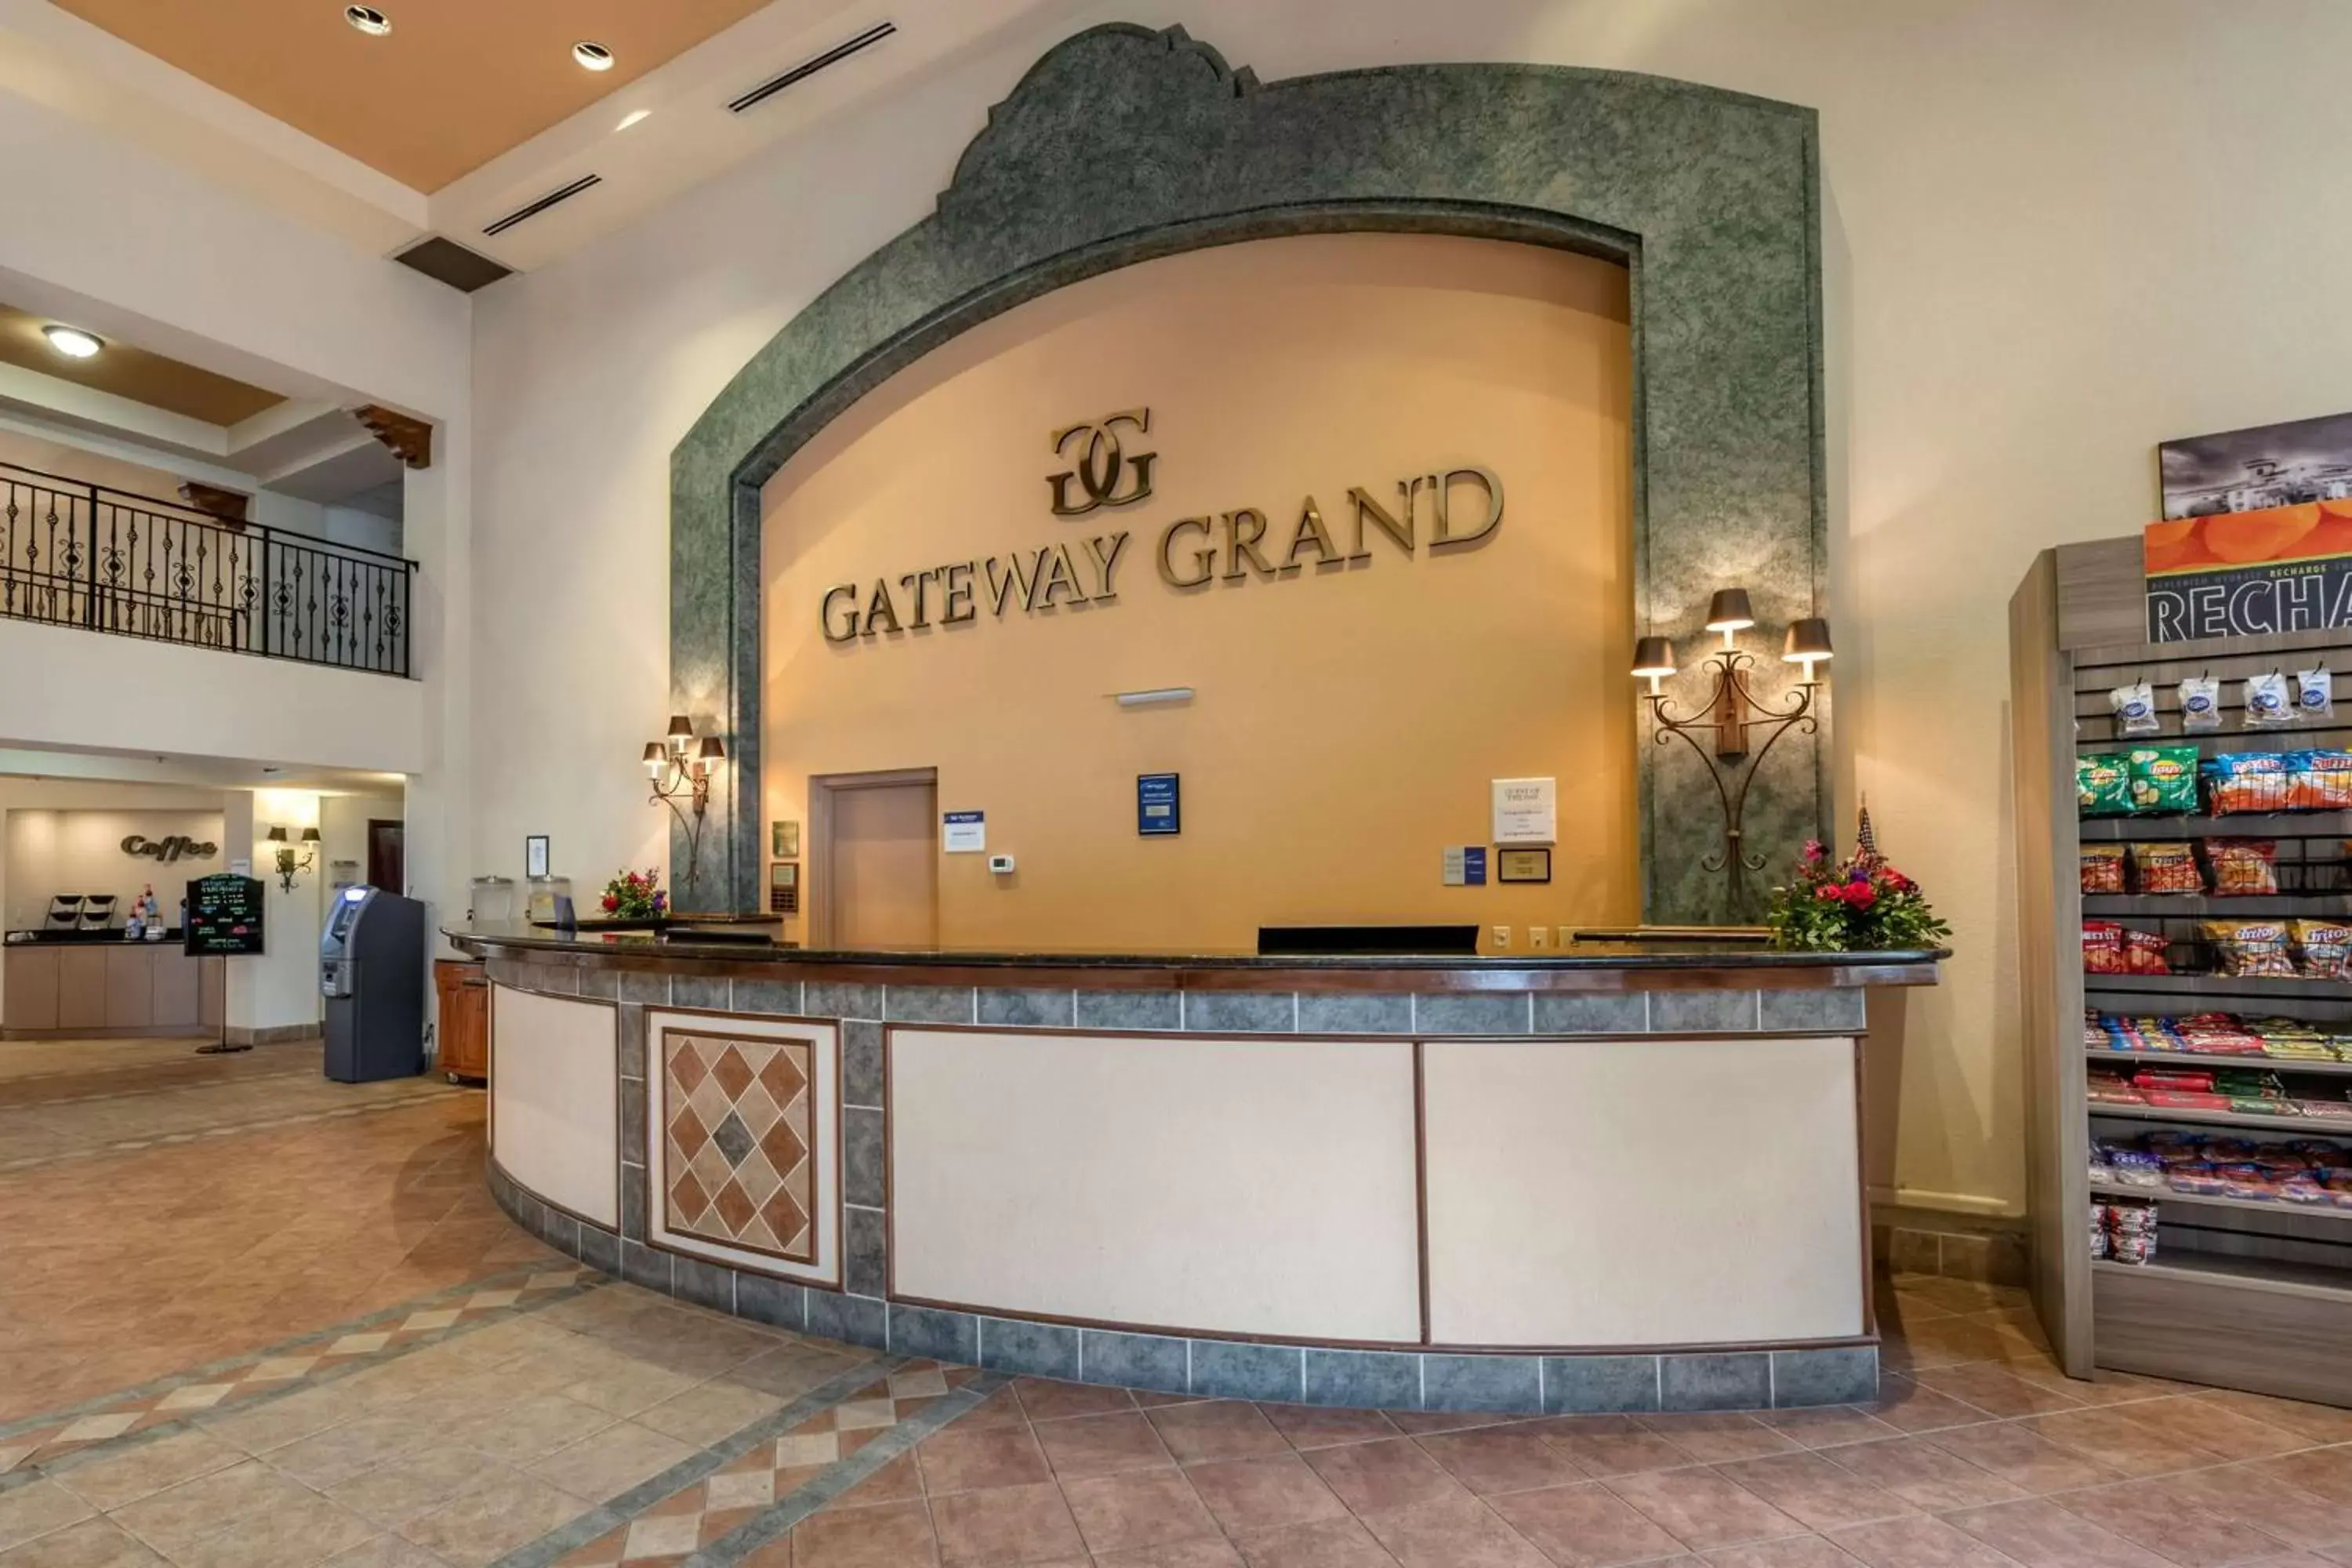 Lobby or reception, Lobby/Reception in Best Western Gateway Grand